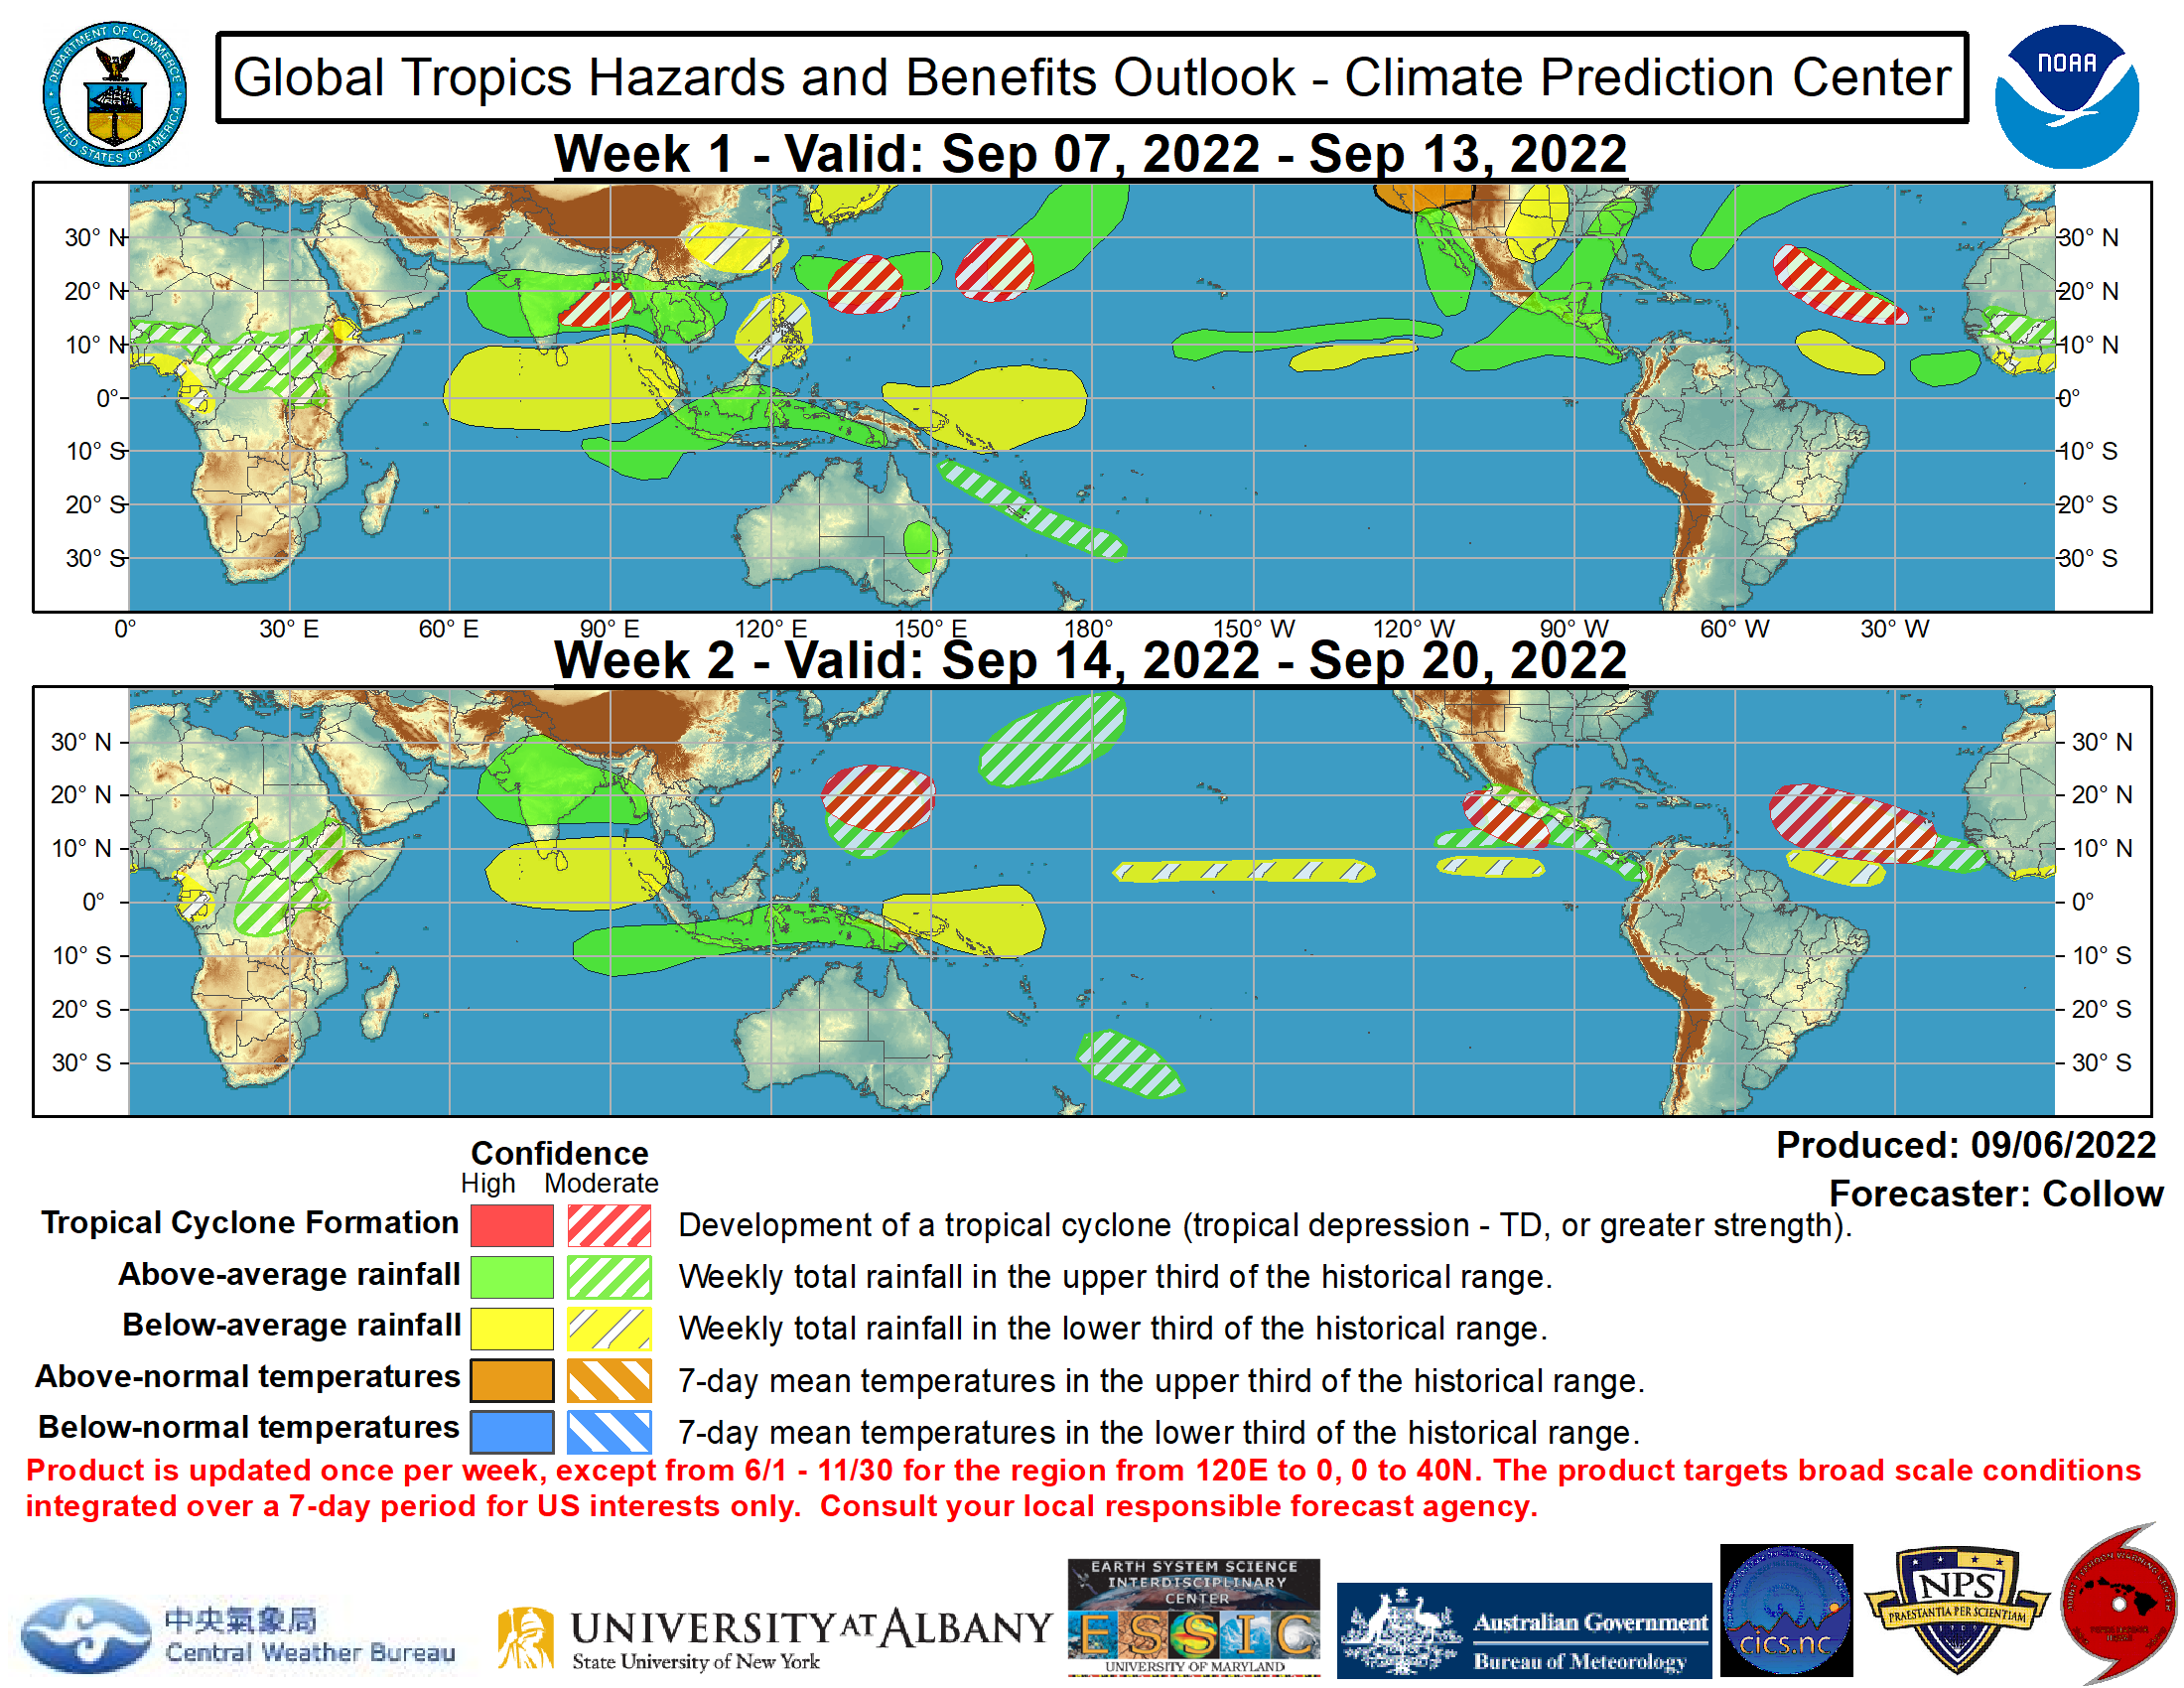 Potensi Hujan Lebat, Siklon Tropis dan Temperatur Mingguan Wilayah Equator Gth_full